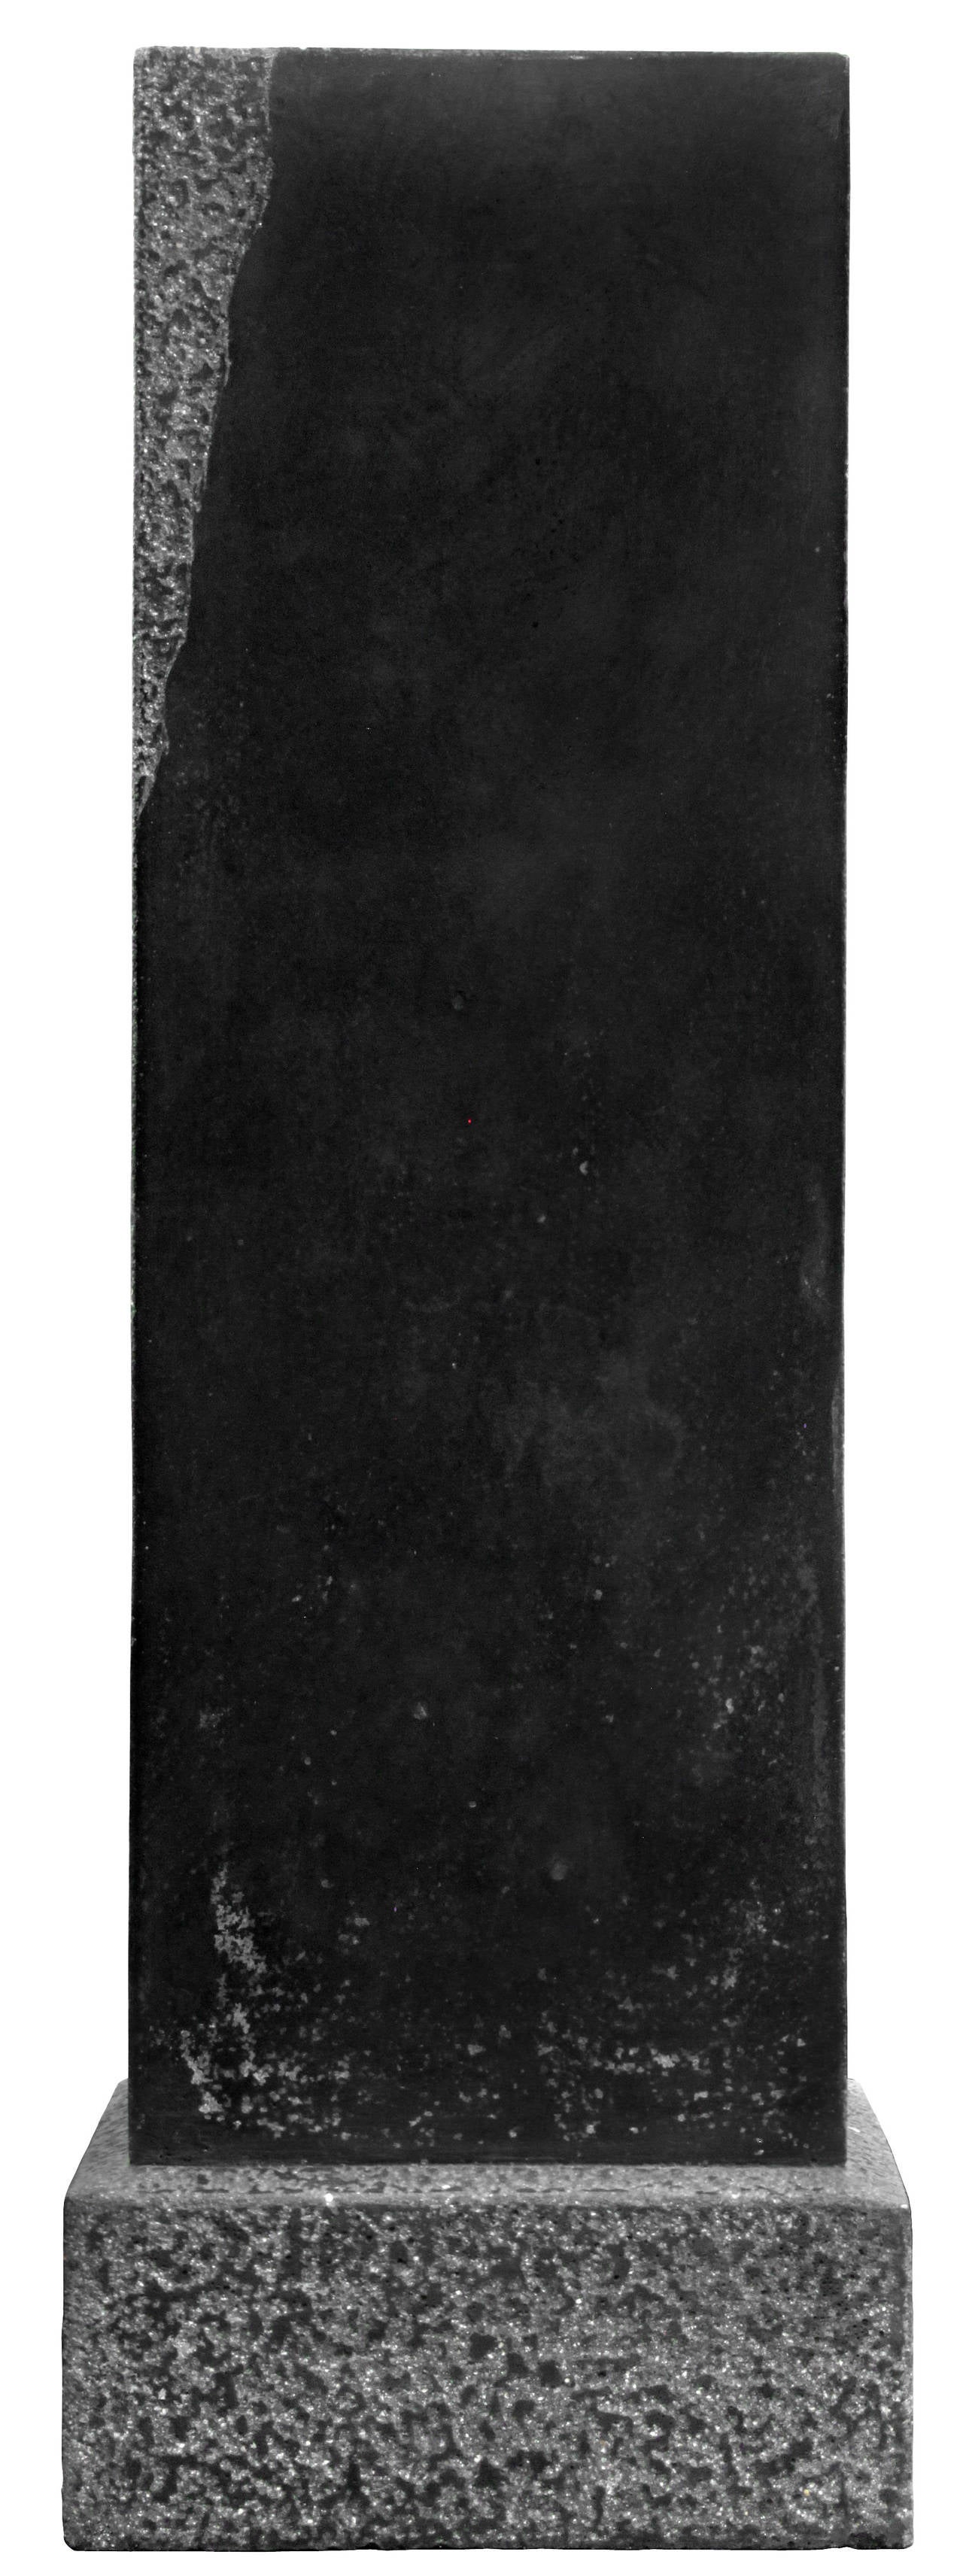 Sockel aus schwarzem Granit mit handgearbeitetem Dekor von Karl Springer:: Amerikaner:: 1980er Jahre.